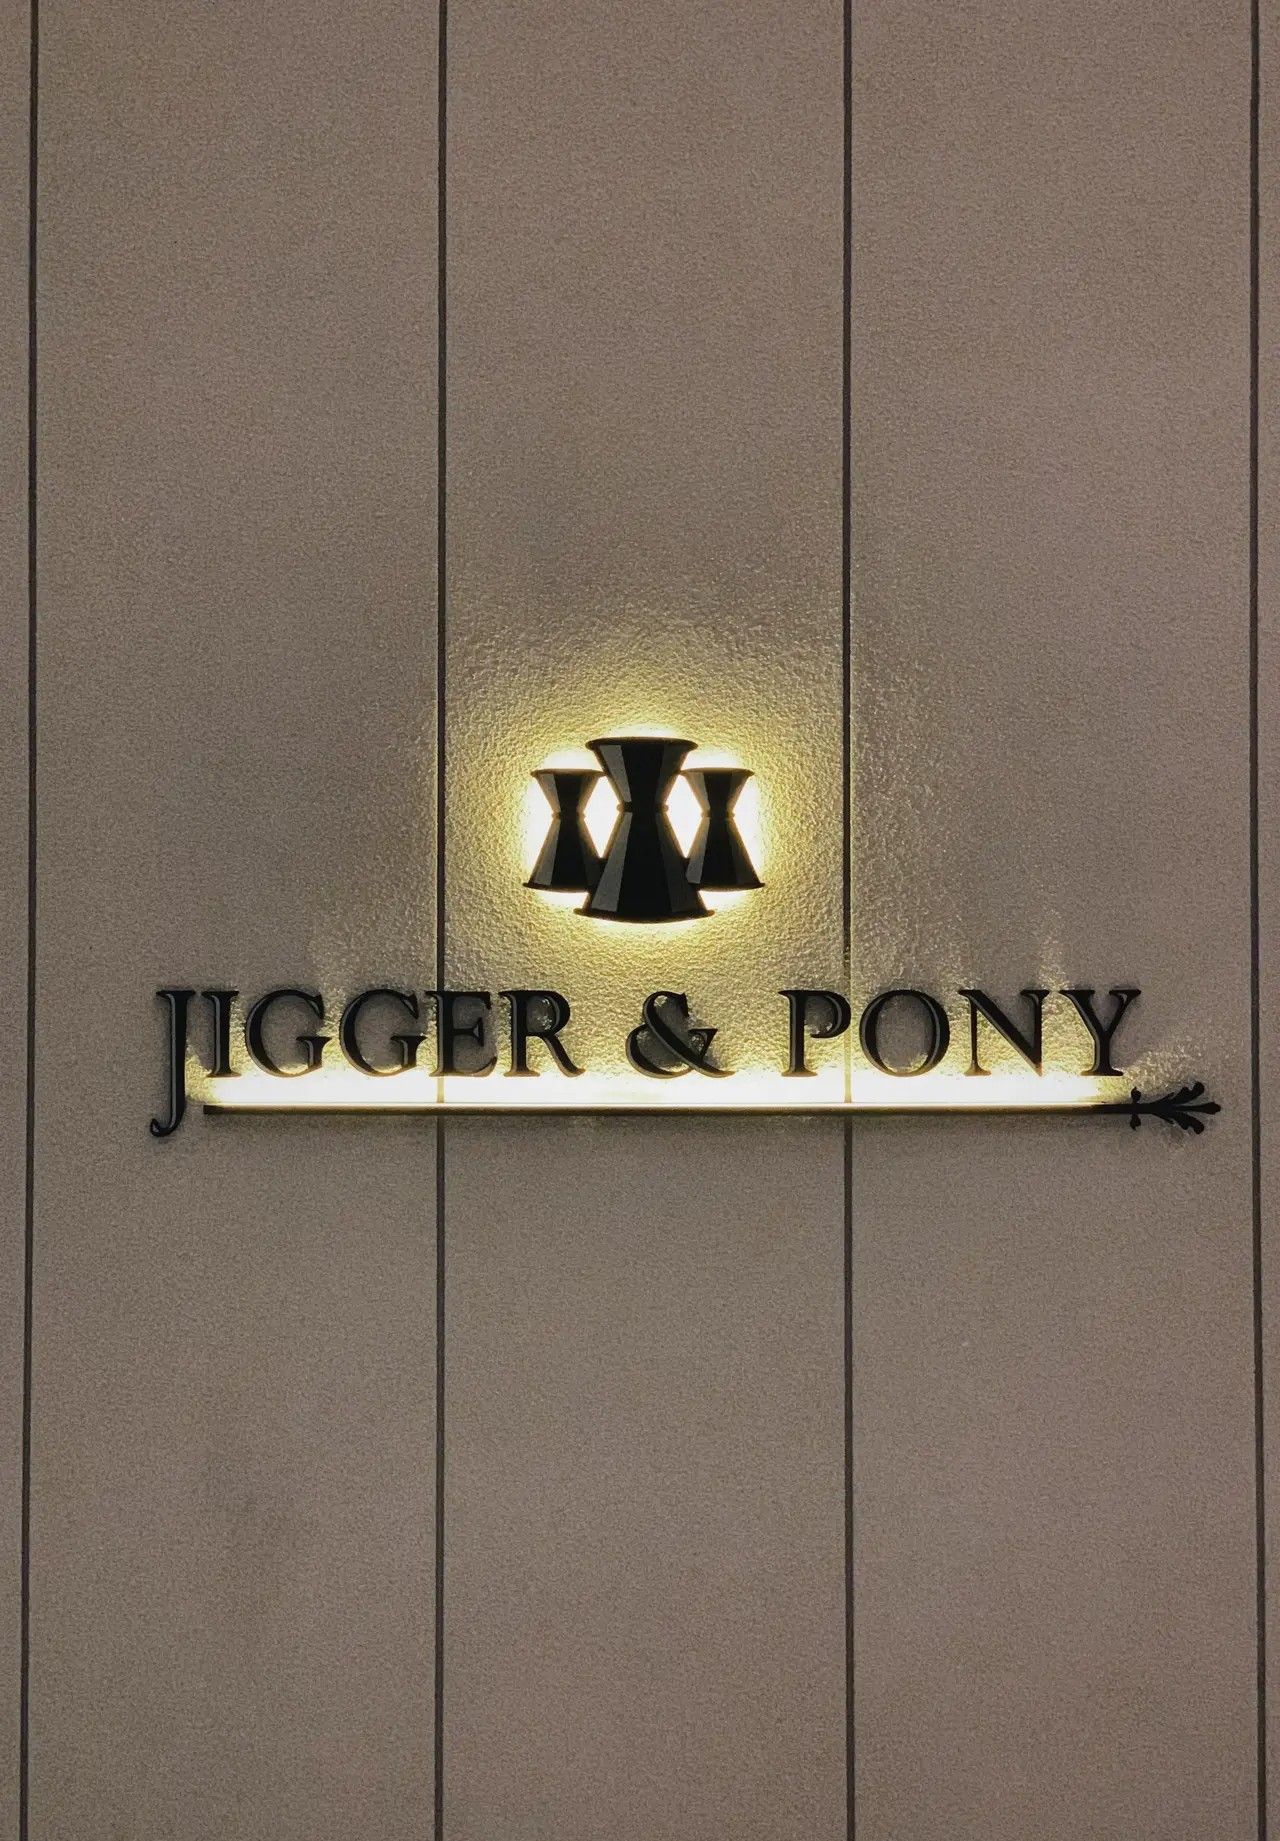 Jigger & pony